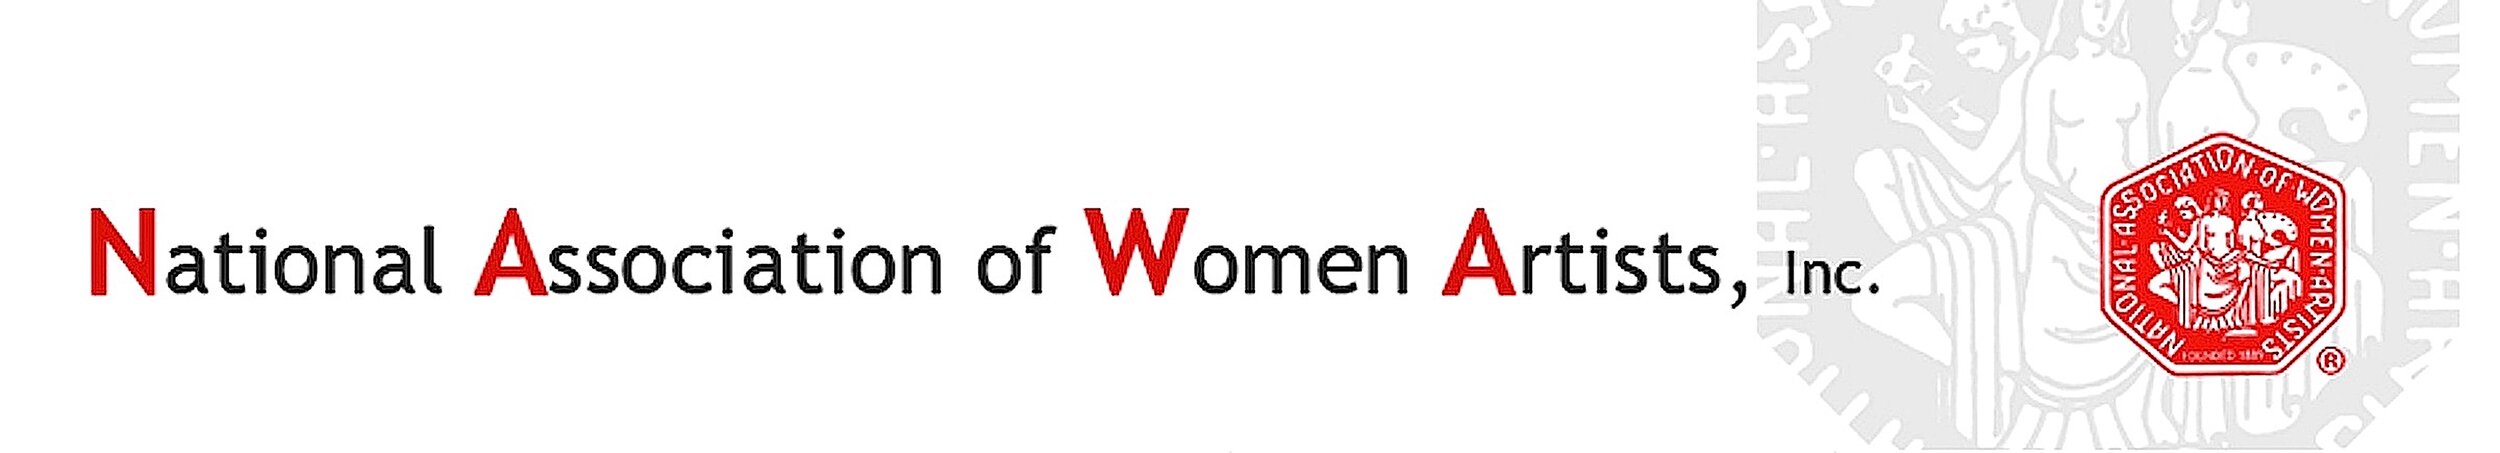 National Association of Woman Artists - Massachusetts